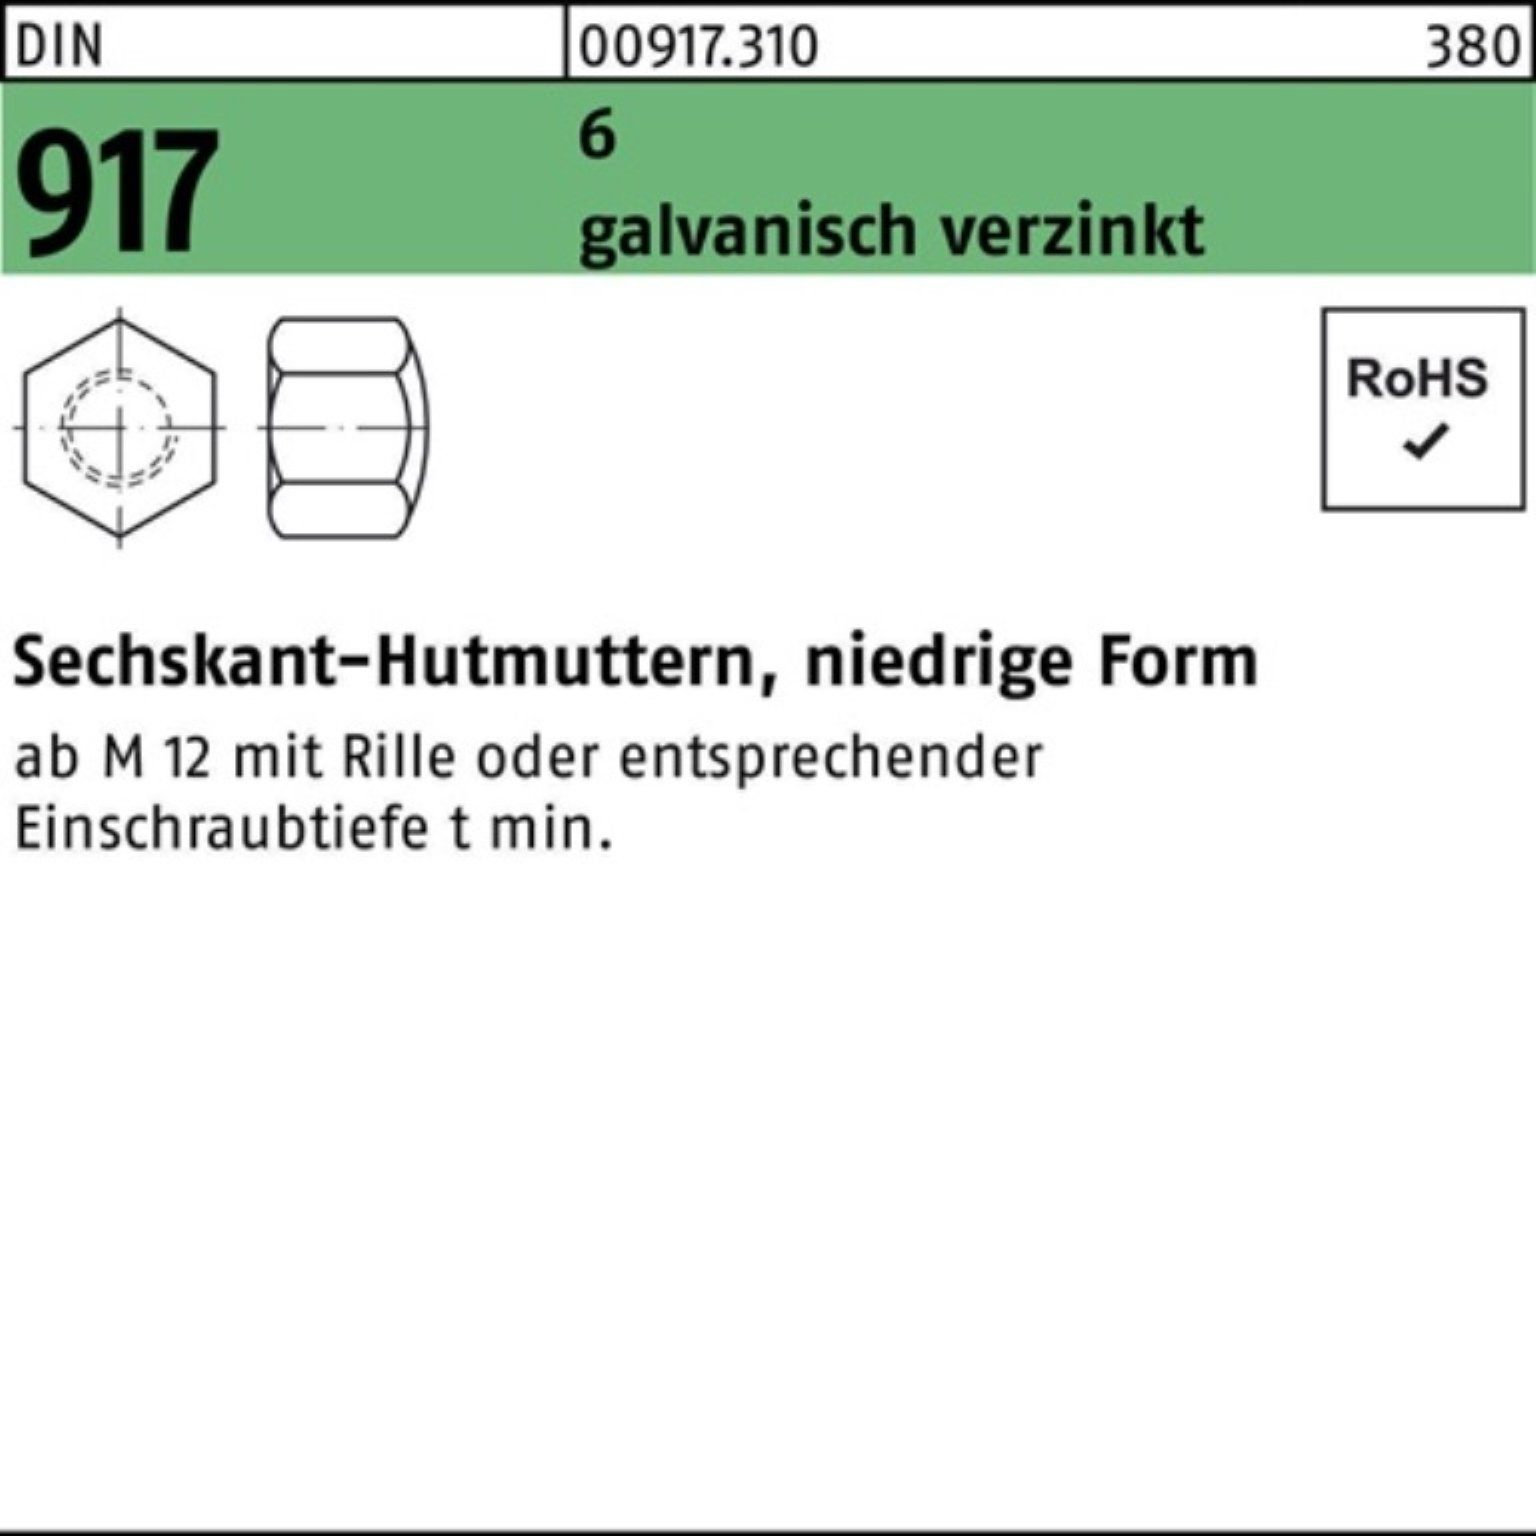 Sechskant-Hutmutter M6 niedrige Form, in Edelstahl - DIN917